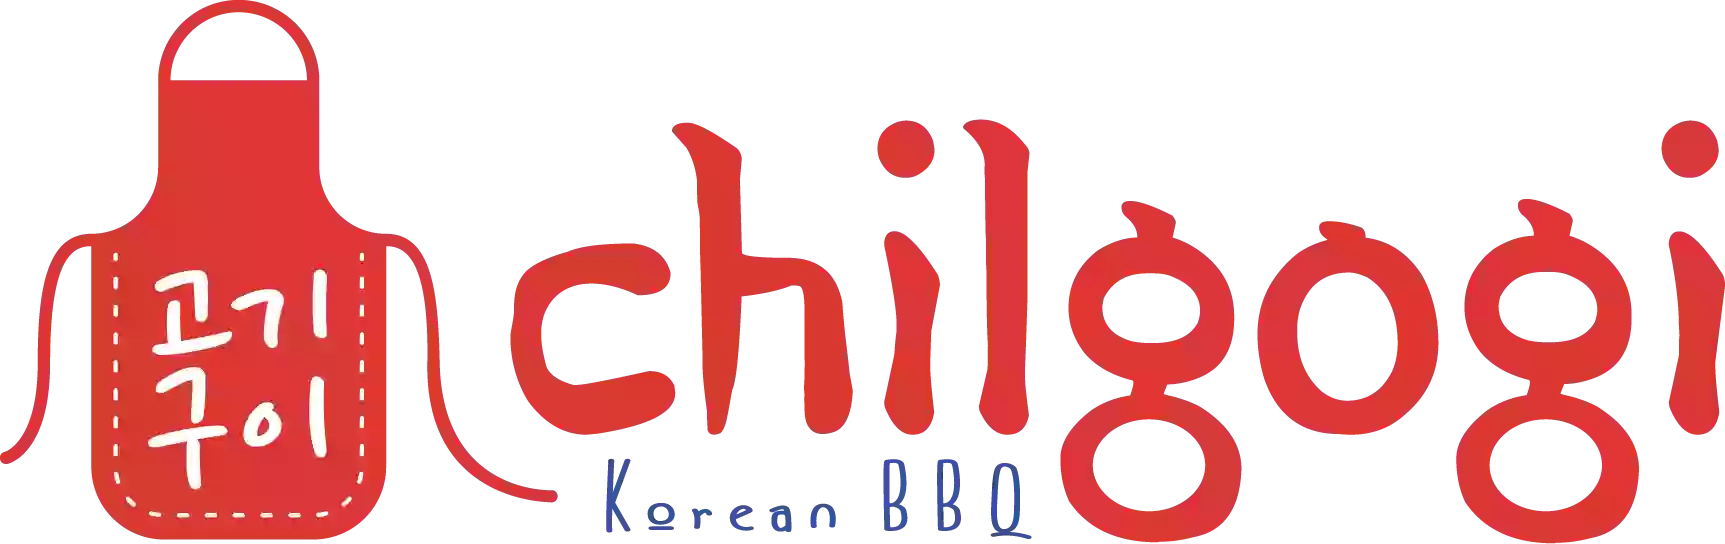 Chilgogi Korean BBQ